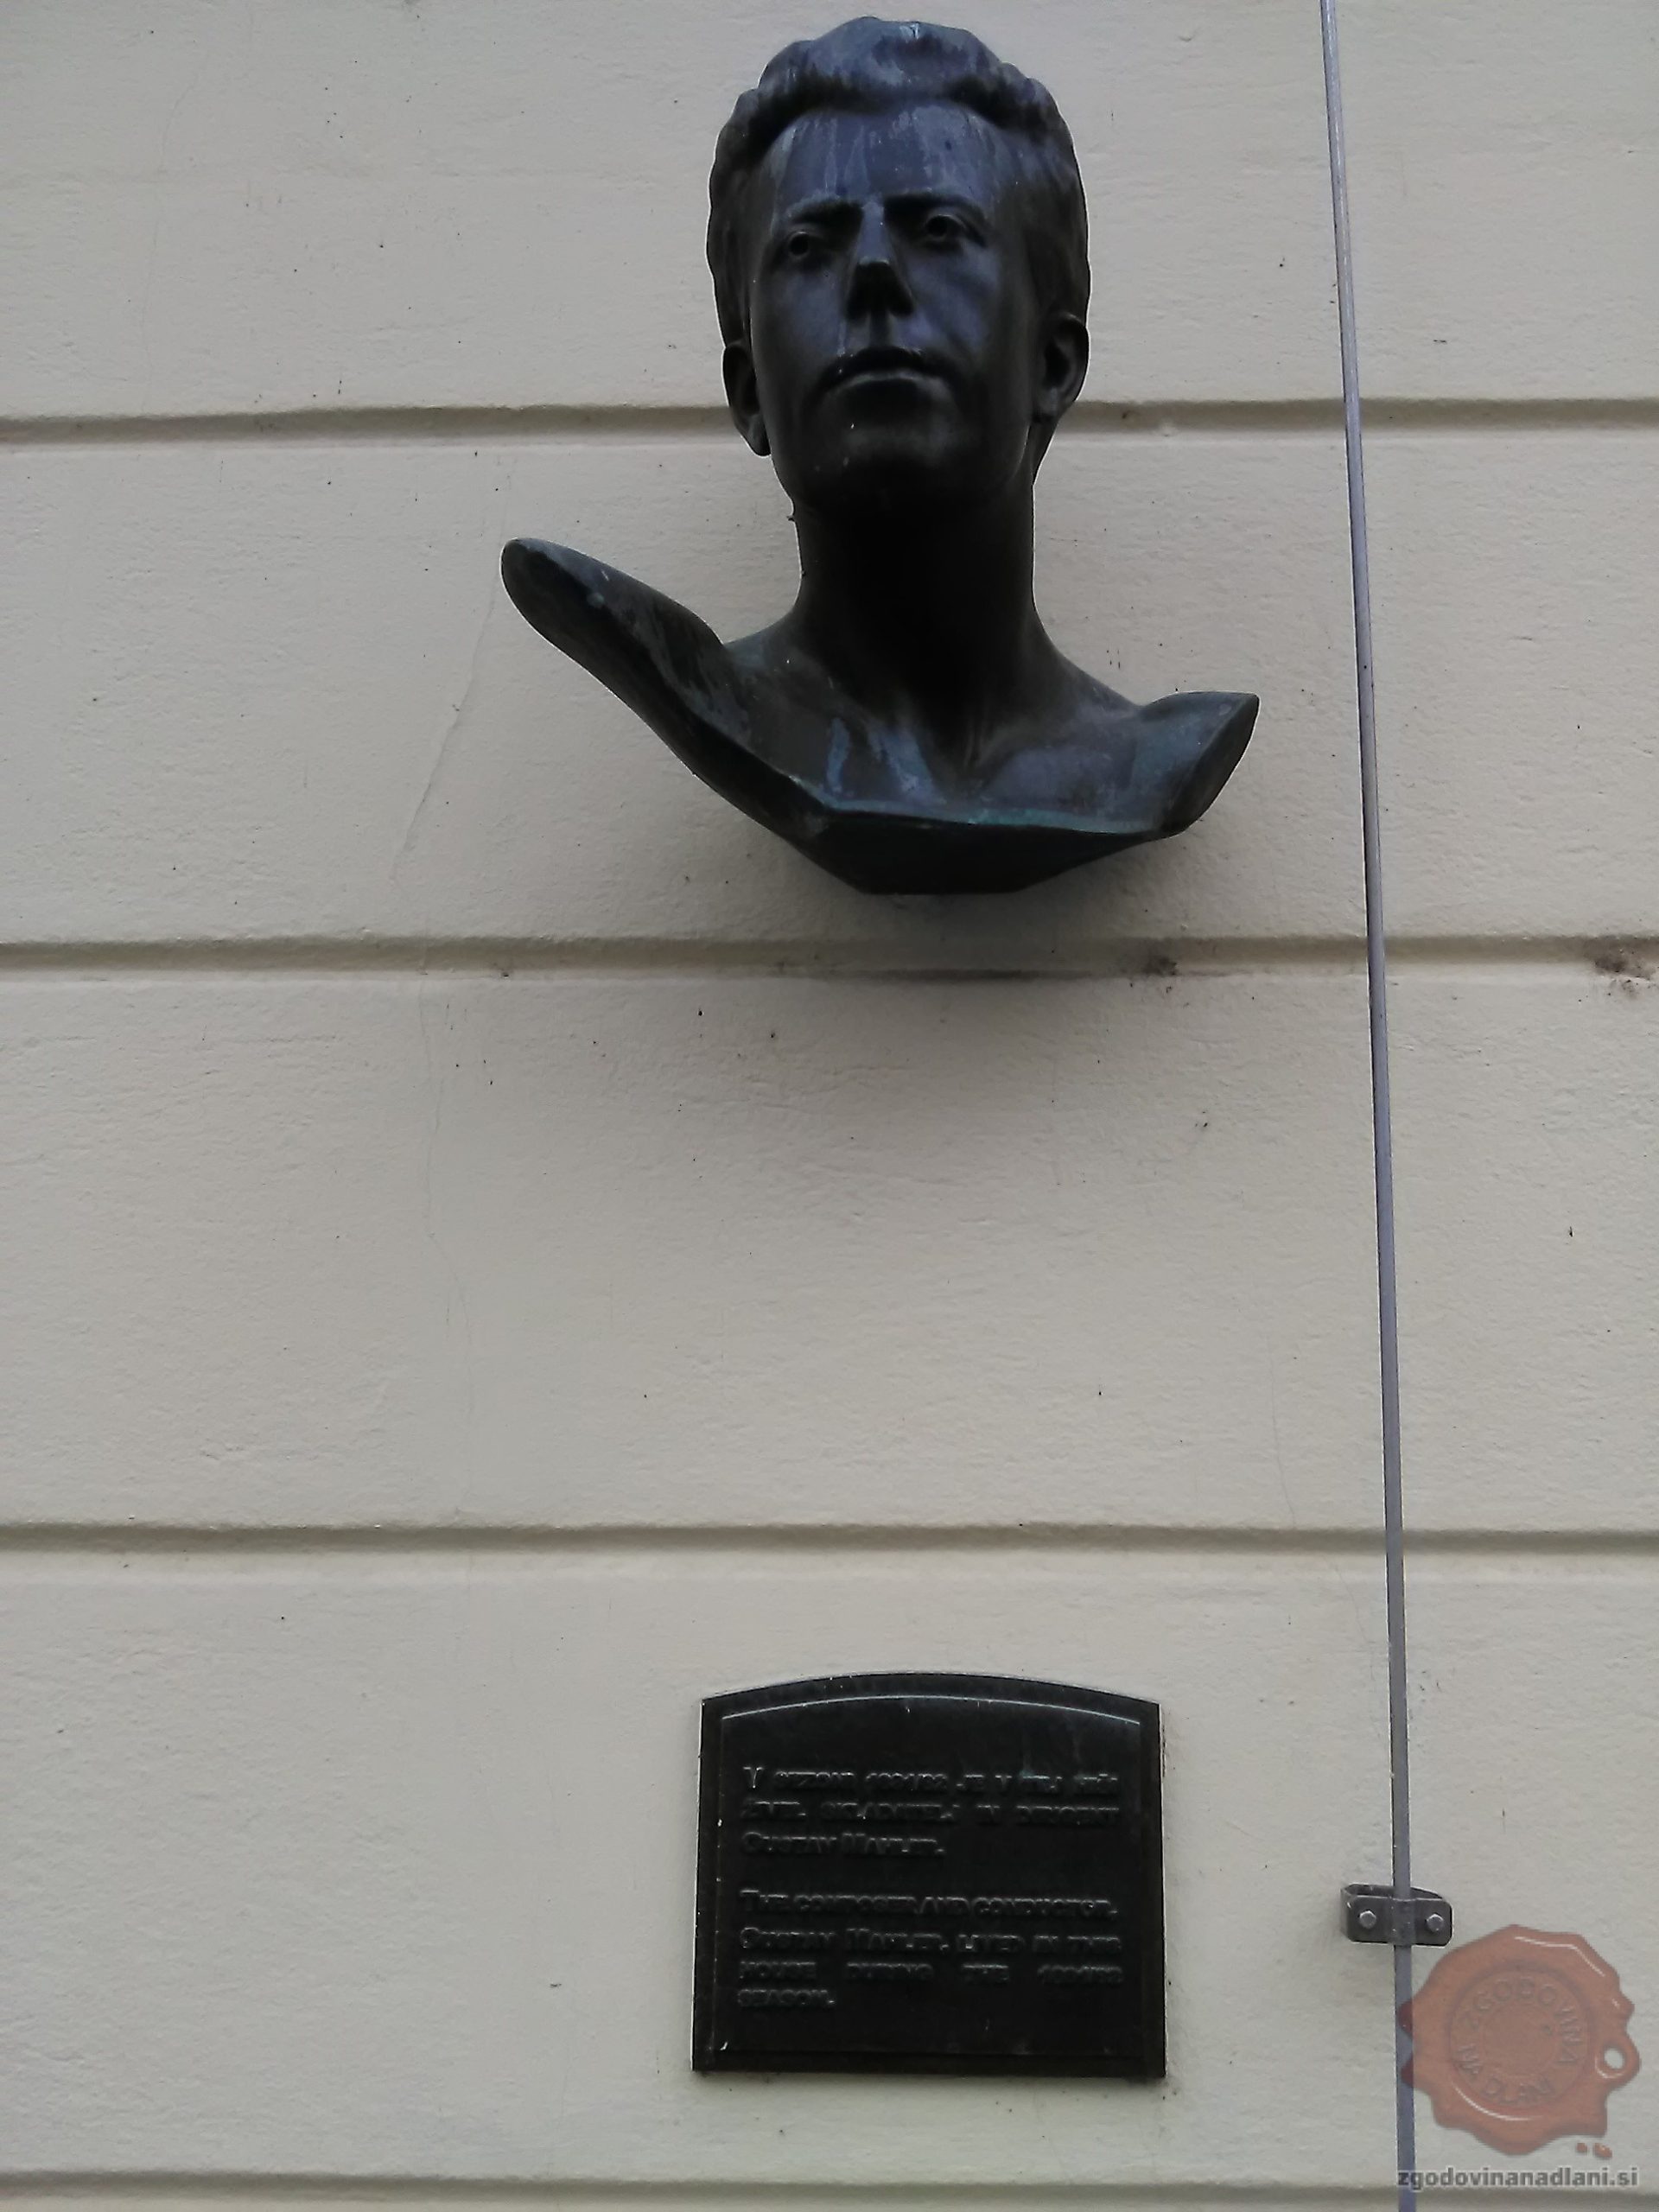 Doprsni kip Mahlerja na ljubljanskem mestnem trgu. Foto Danijel Osmanagić.